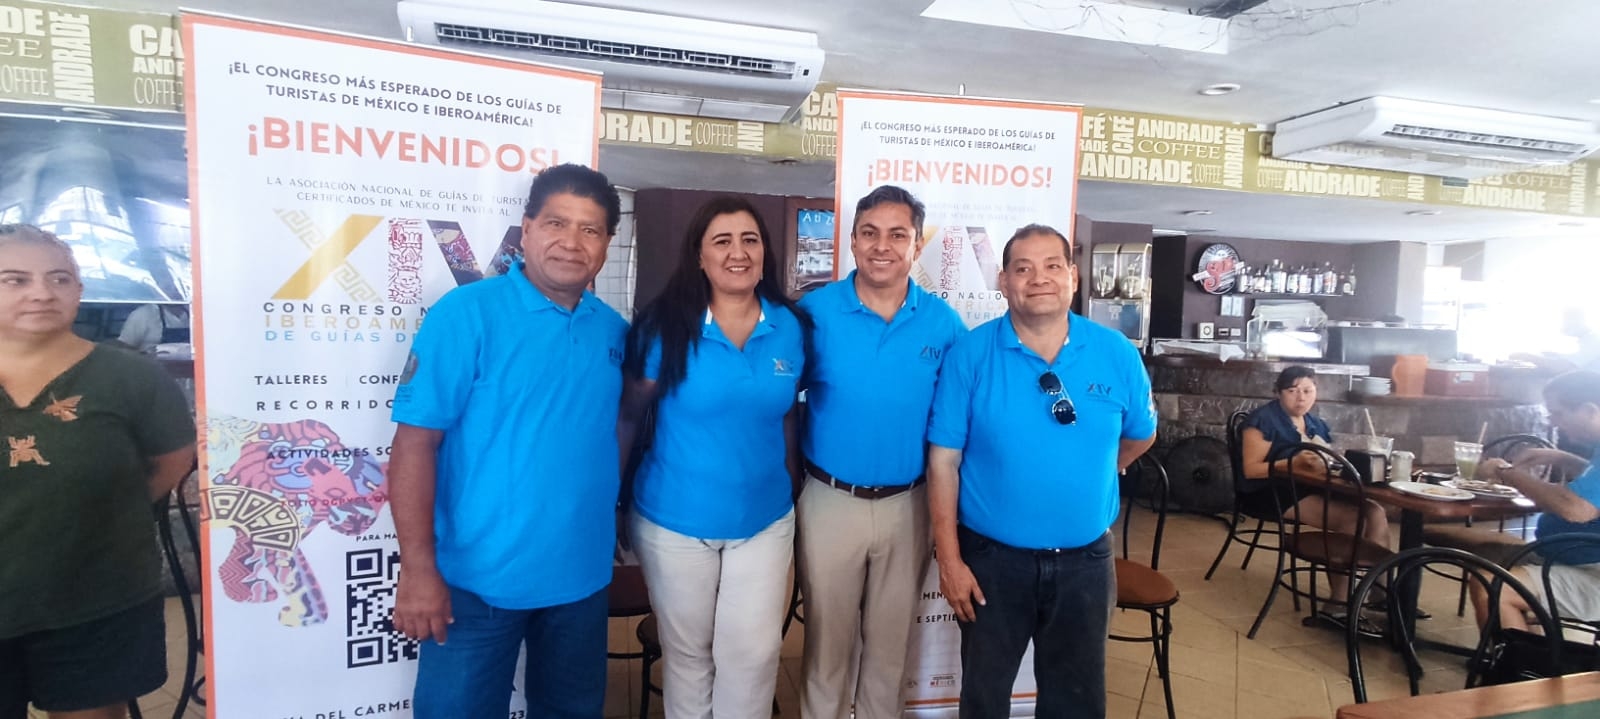 El “XIV Congreso Nacional Iberoamericano de Guías de Turistas” se realizará en el Teatro de la Ciudad en Playa del Carmen